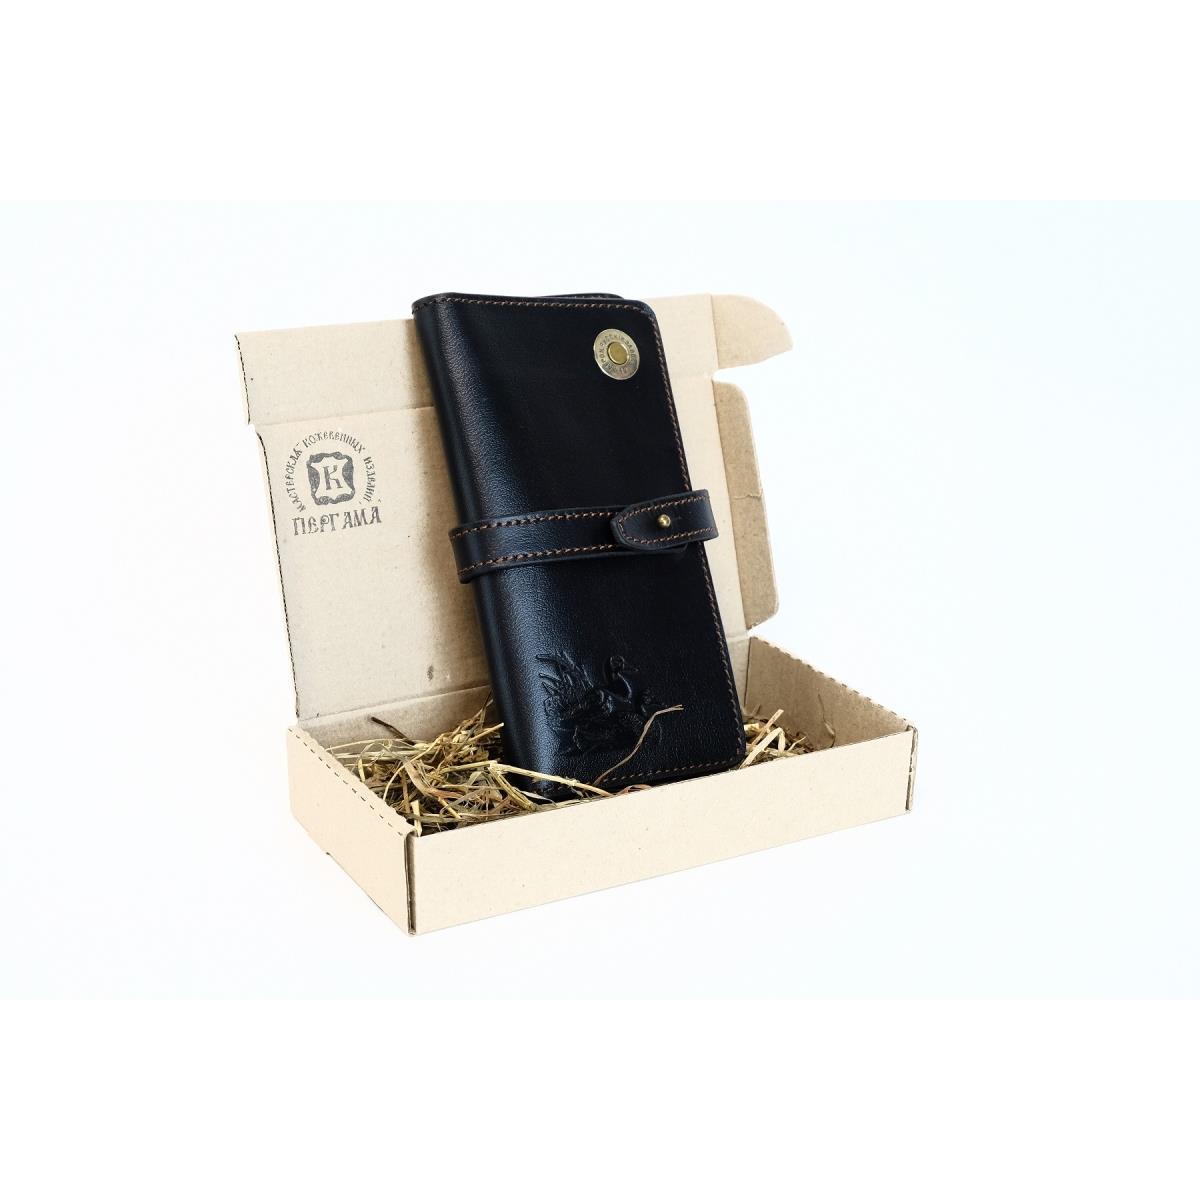 Портмоне Черный Утки Пергама портмоне на магните отдел для автодокументов и паспорта цвет коричневый